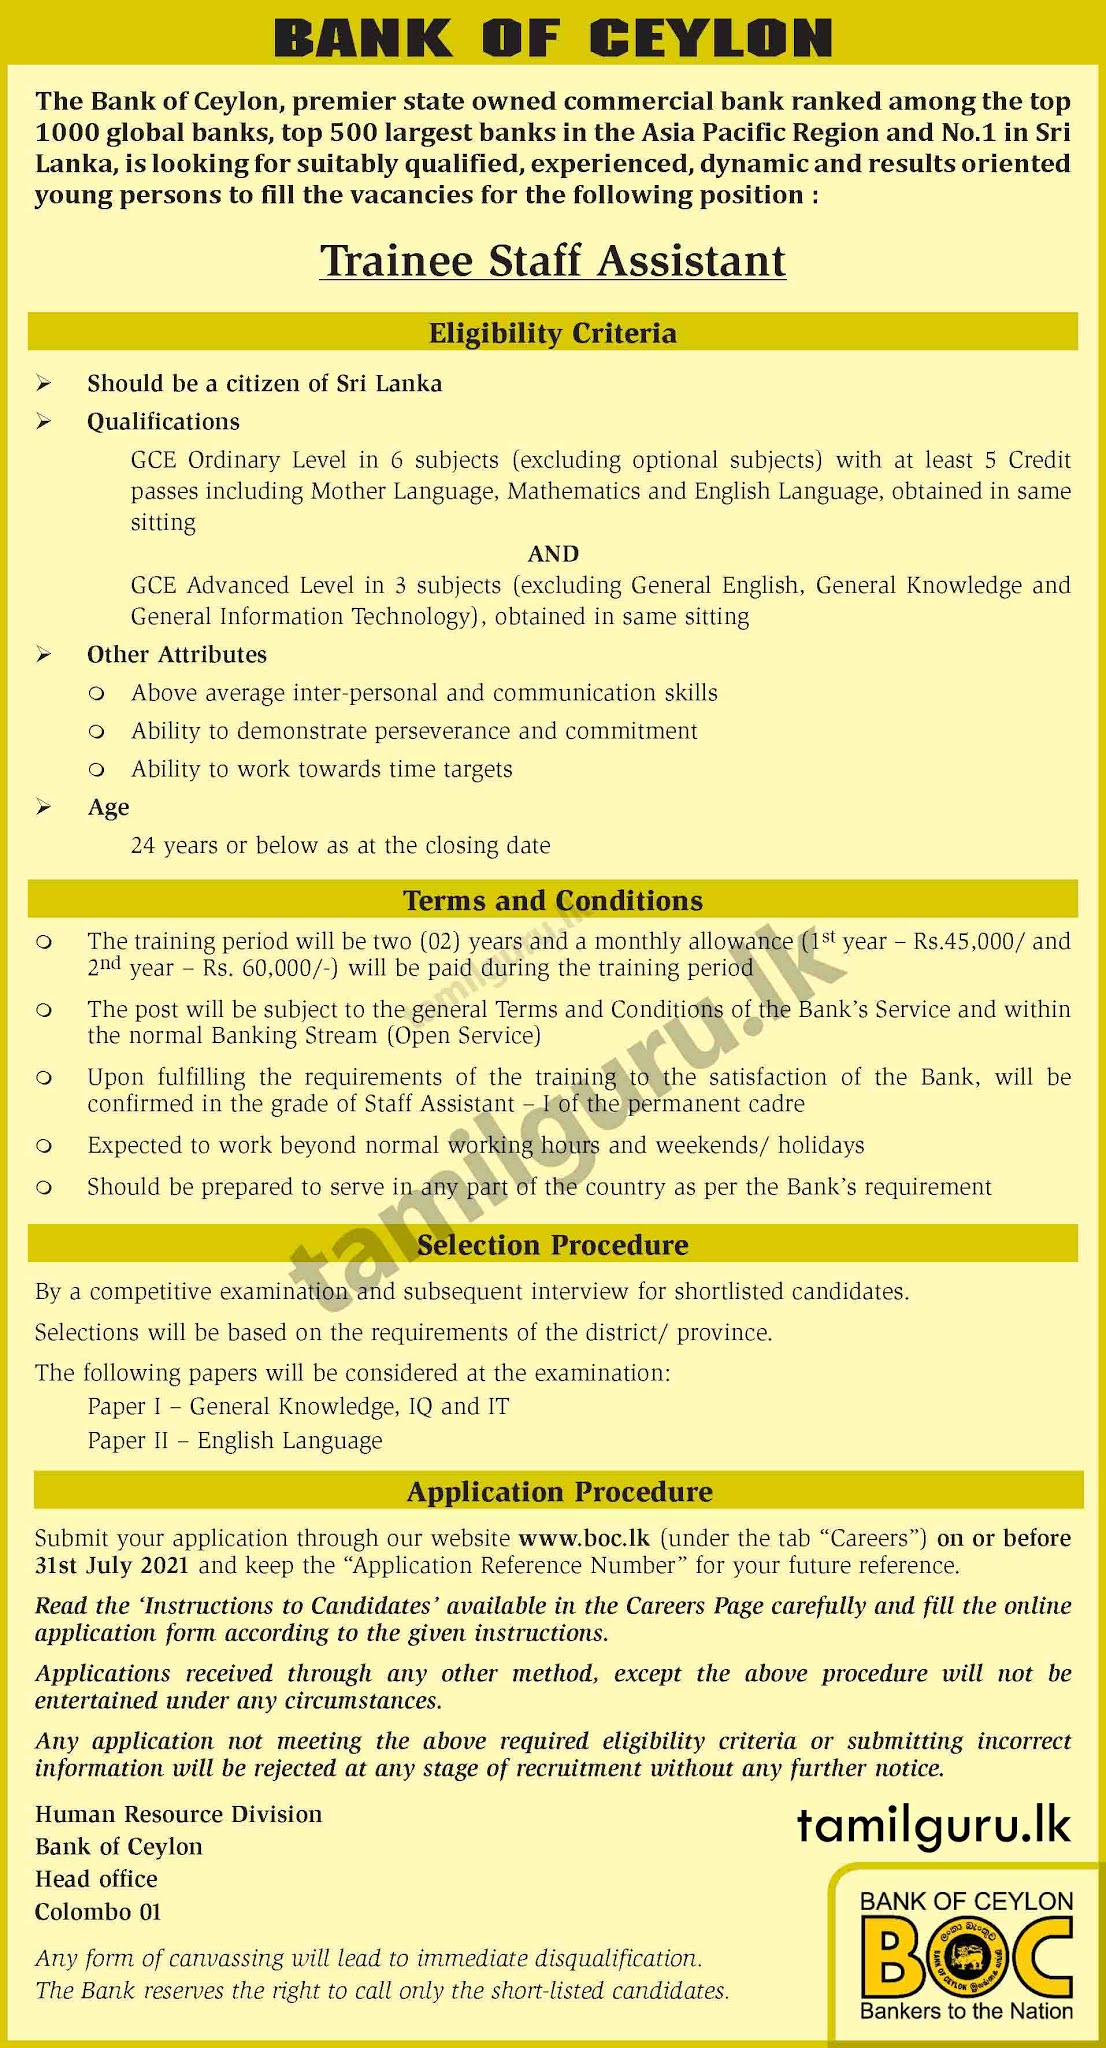 Bank of Ceylon Vacancies 2021 - Trainee Secretarial Assistant Notice in English